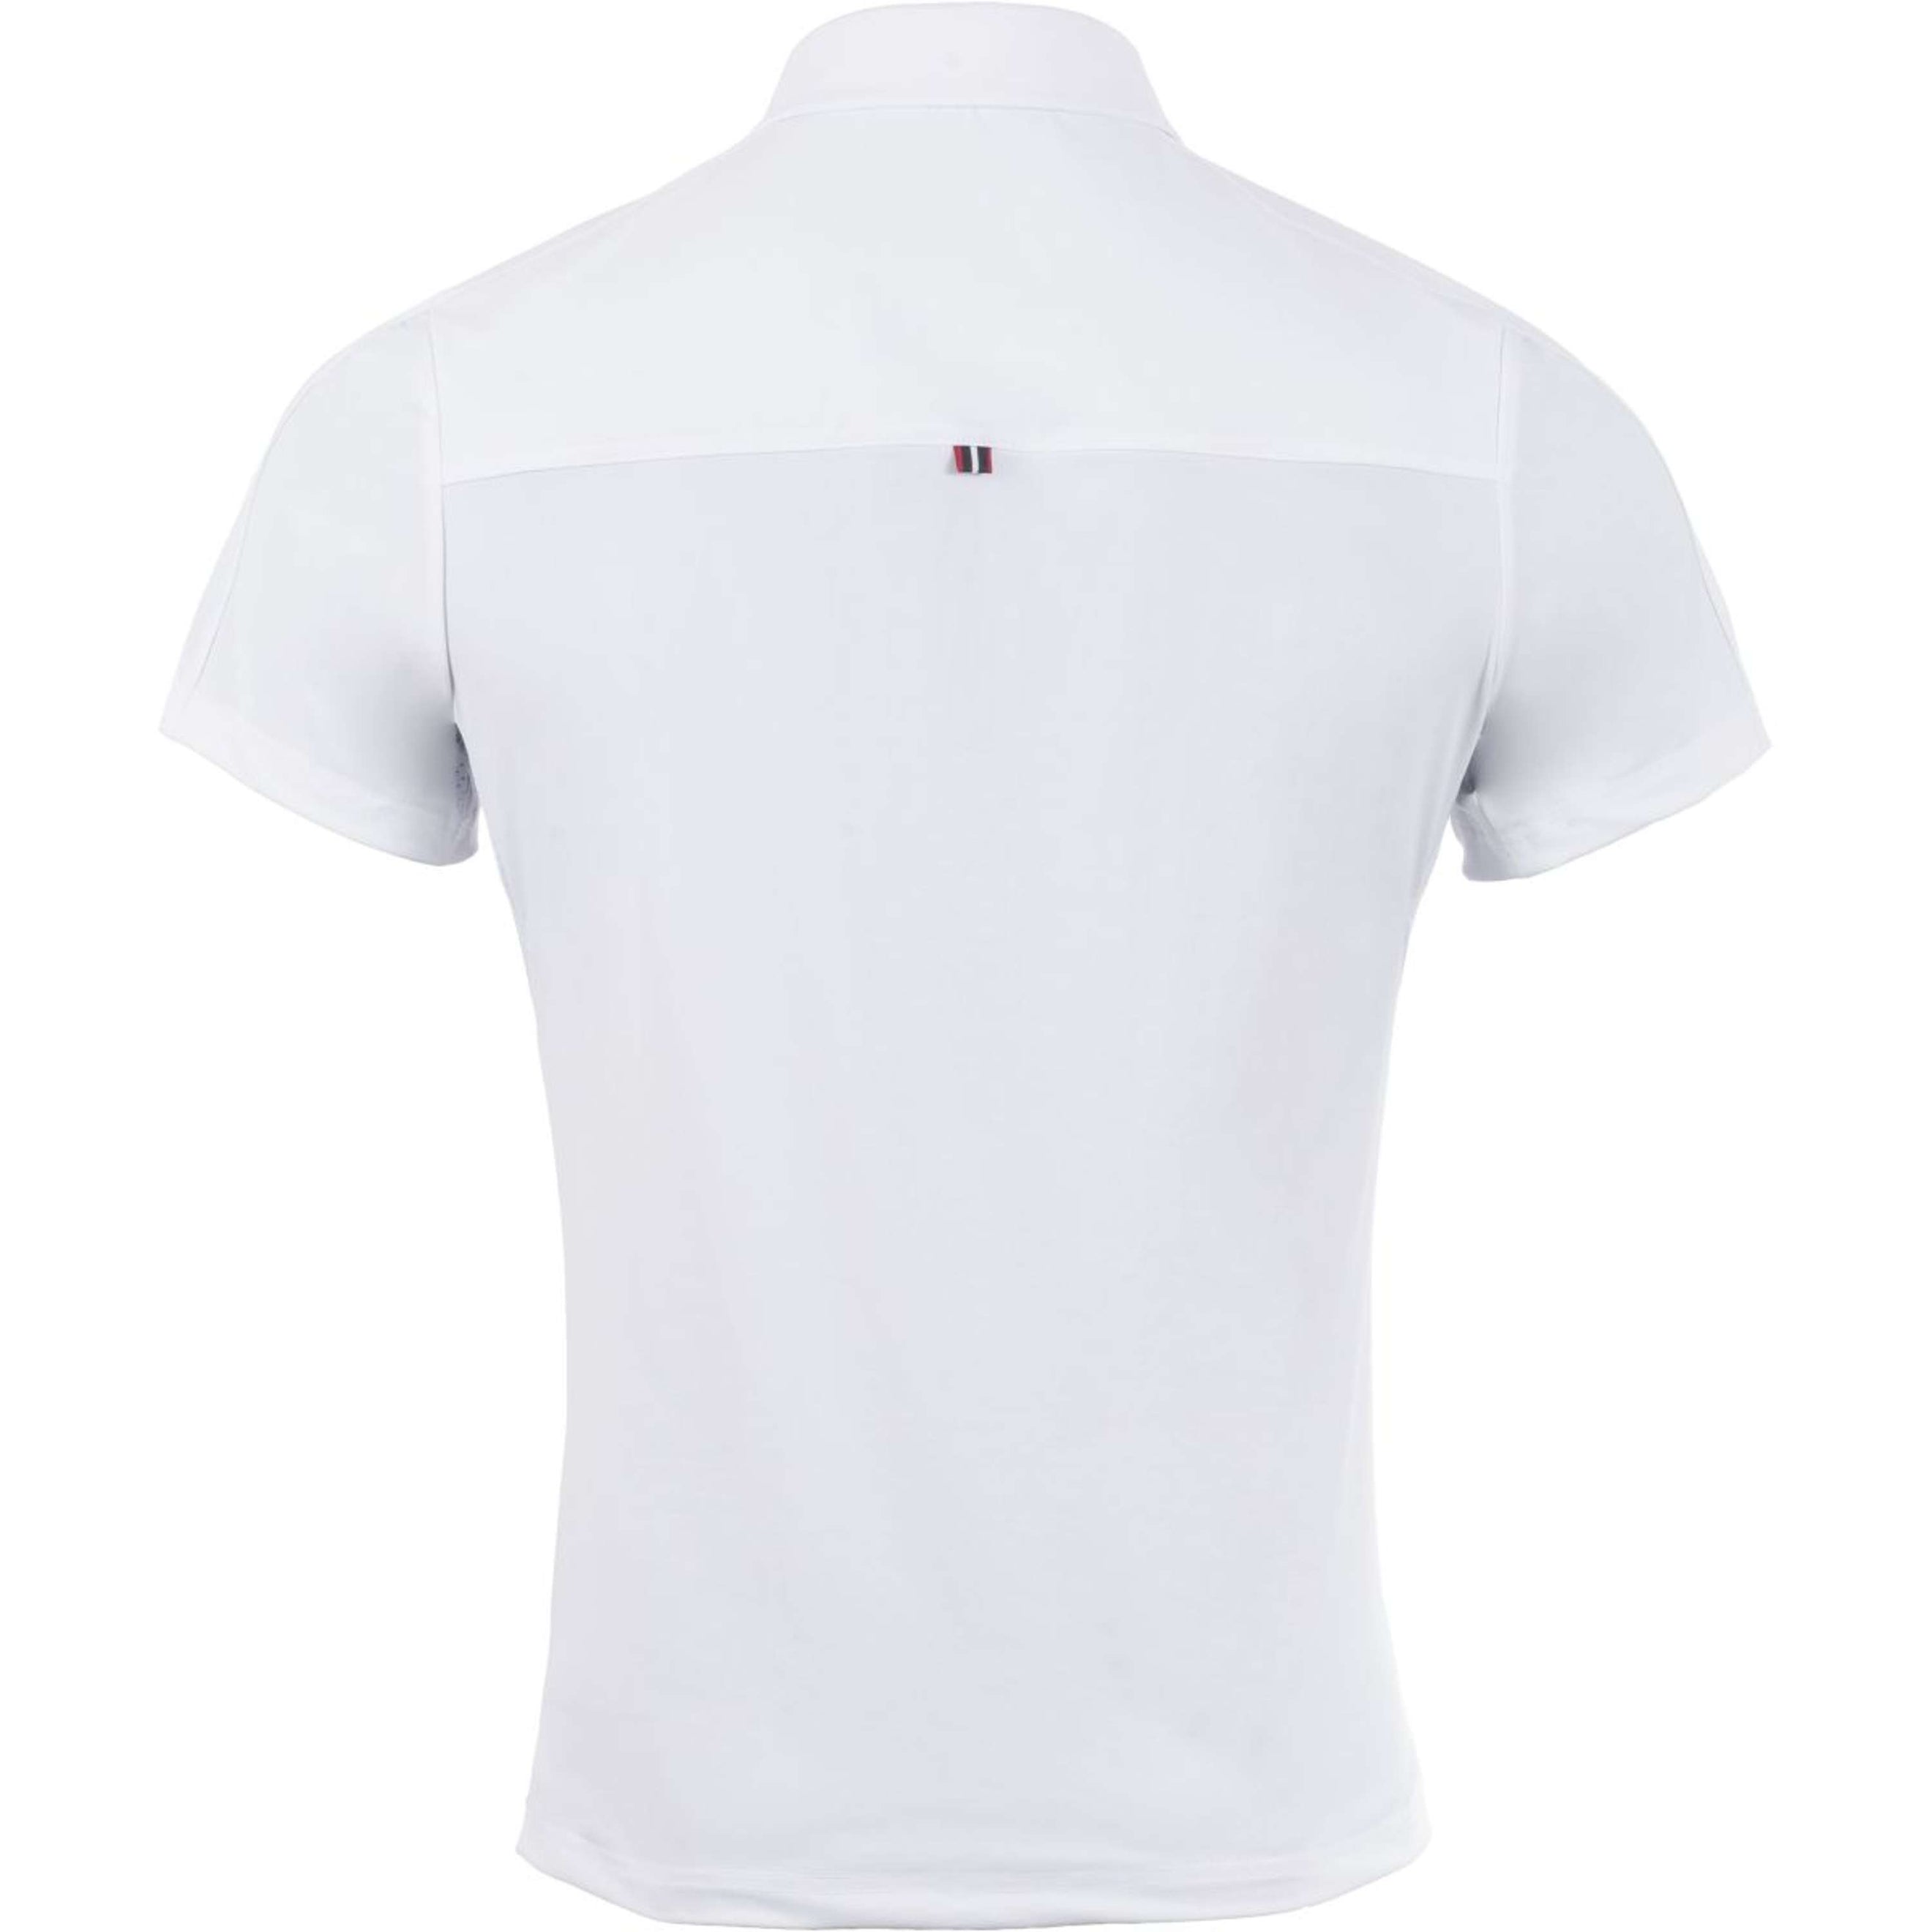 Cavallo T-shirt de Concours Caval Hommes Blanc